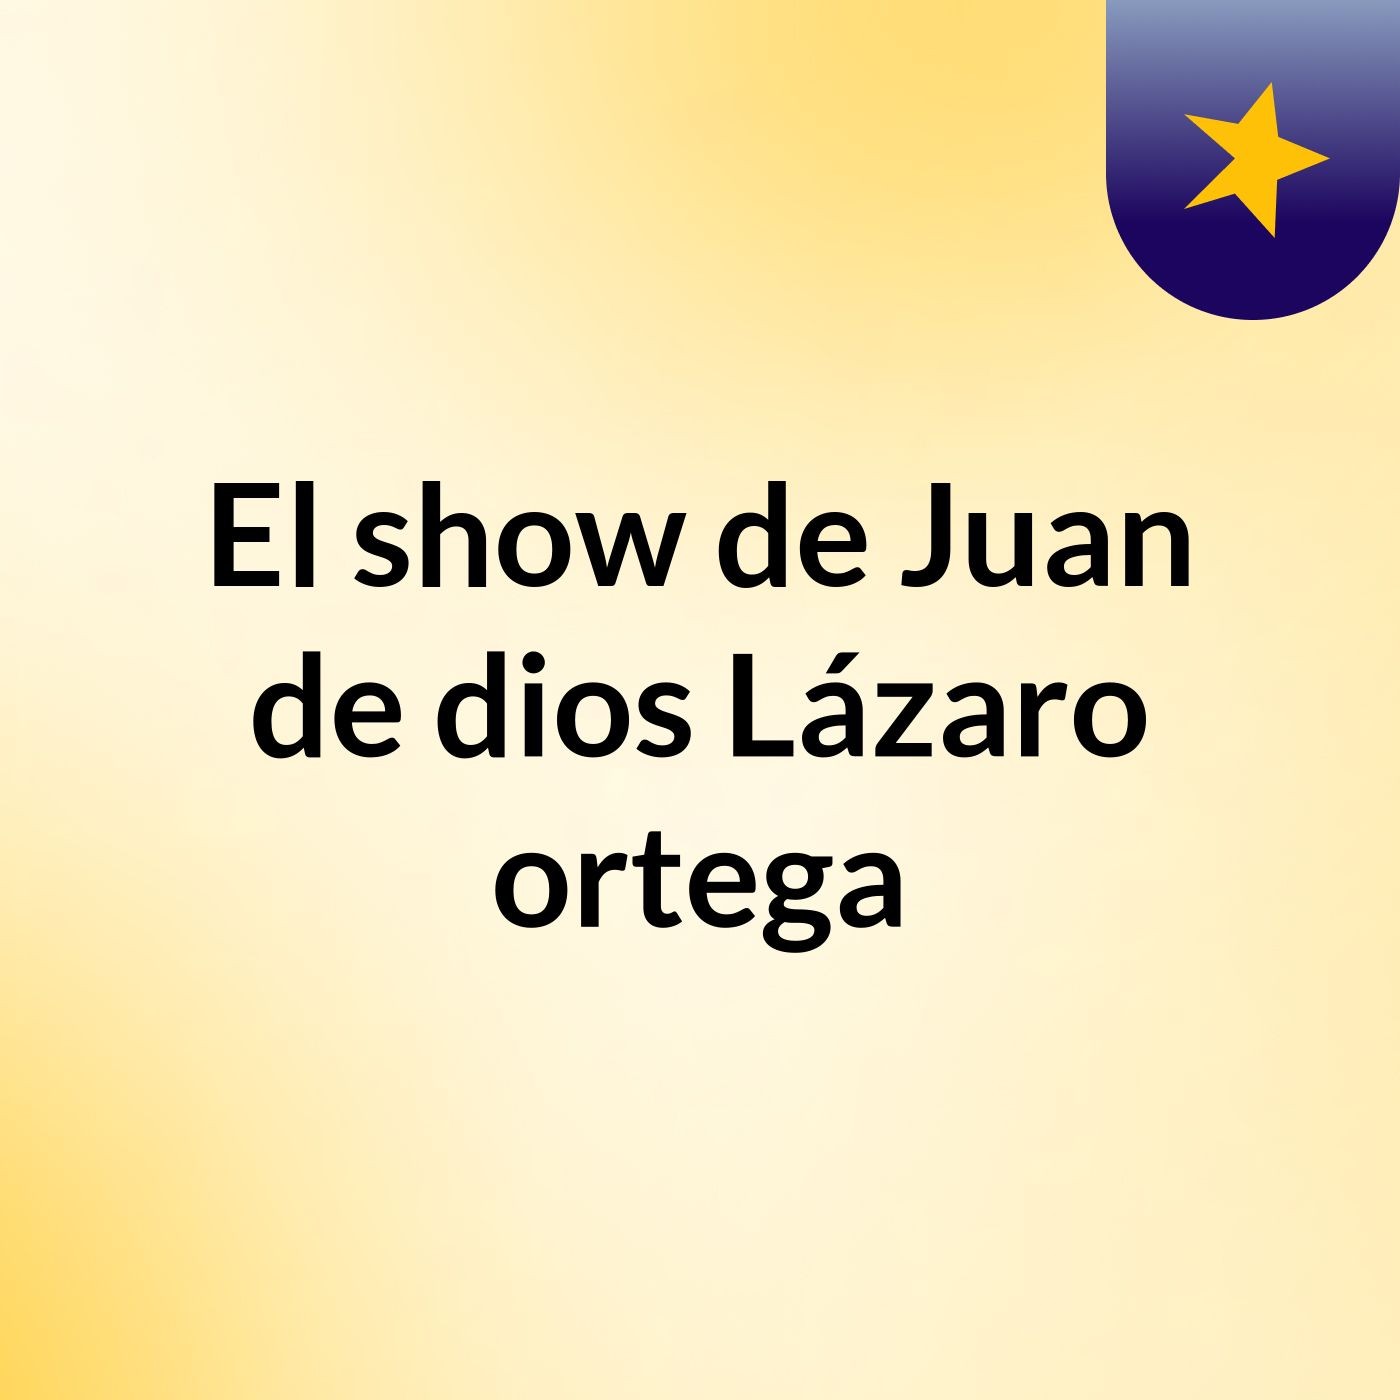 Episodio 3 - El show de Juan de dios Lázaro ortega